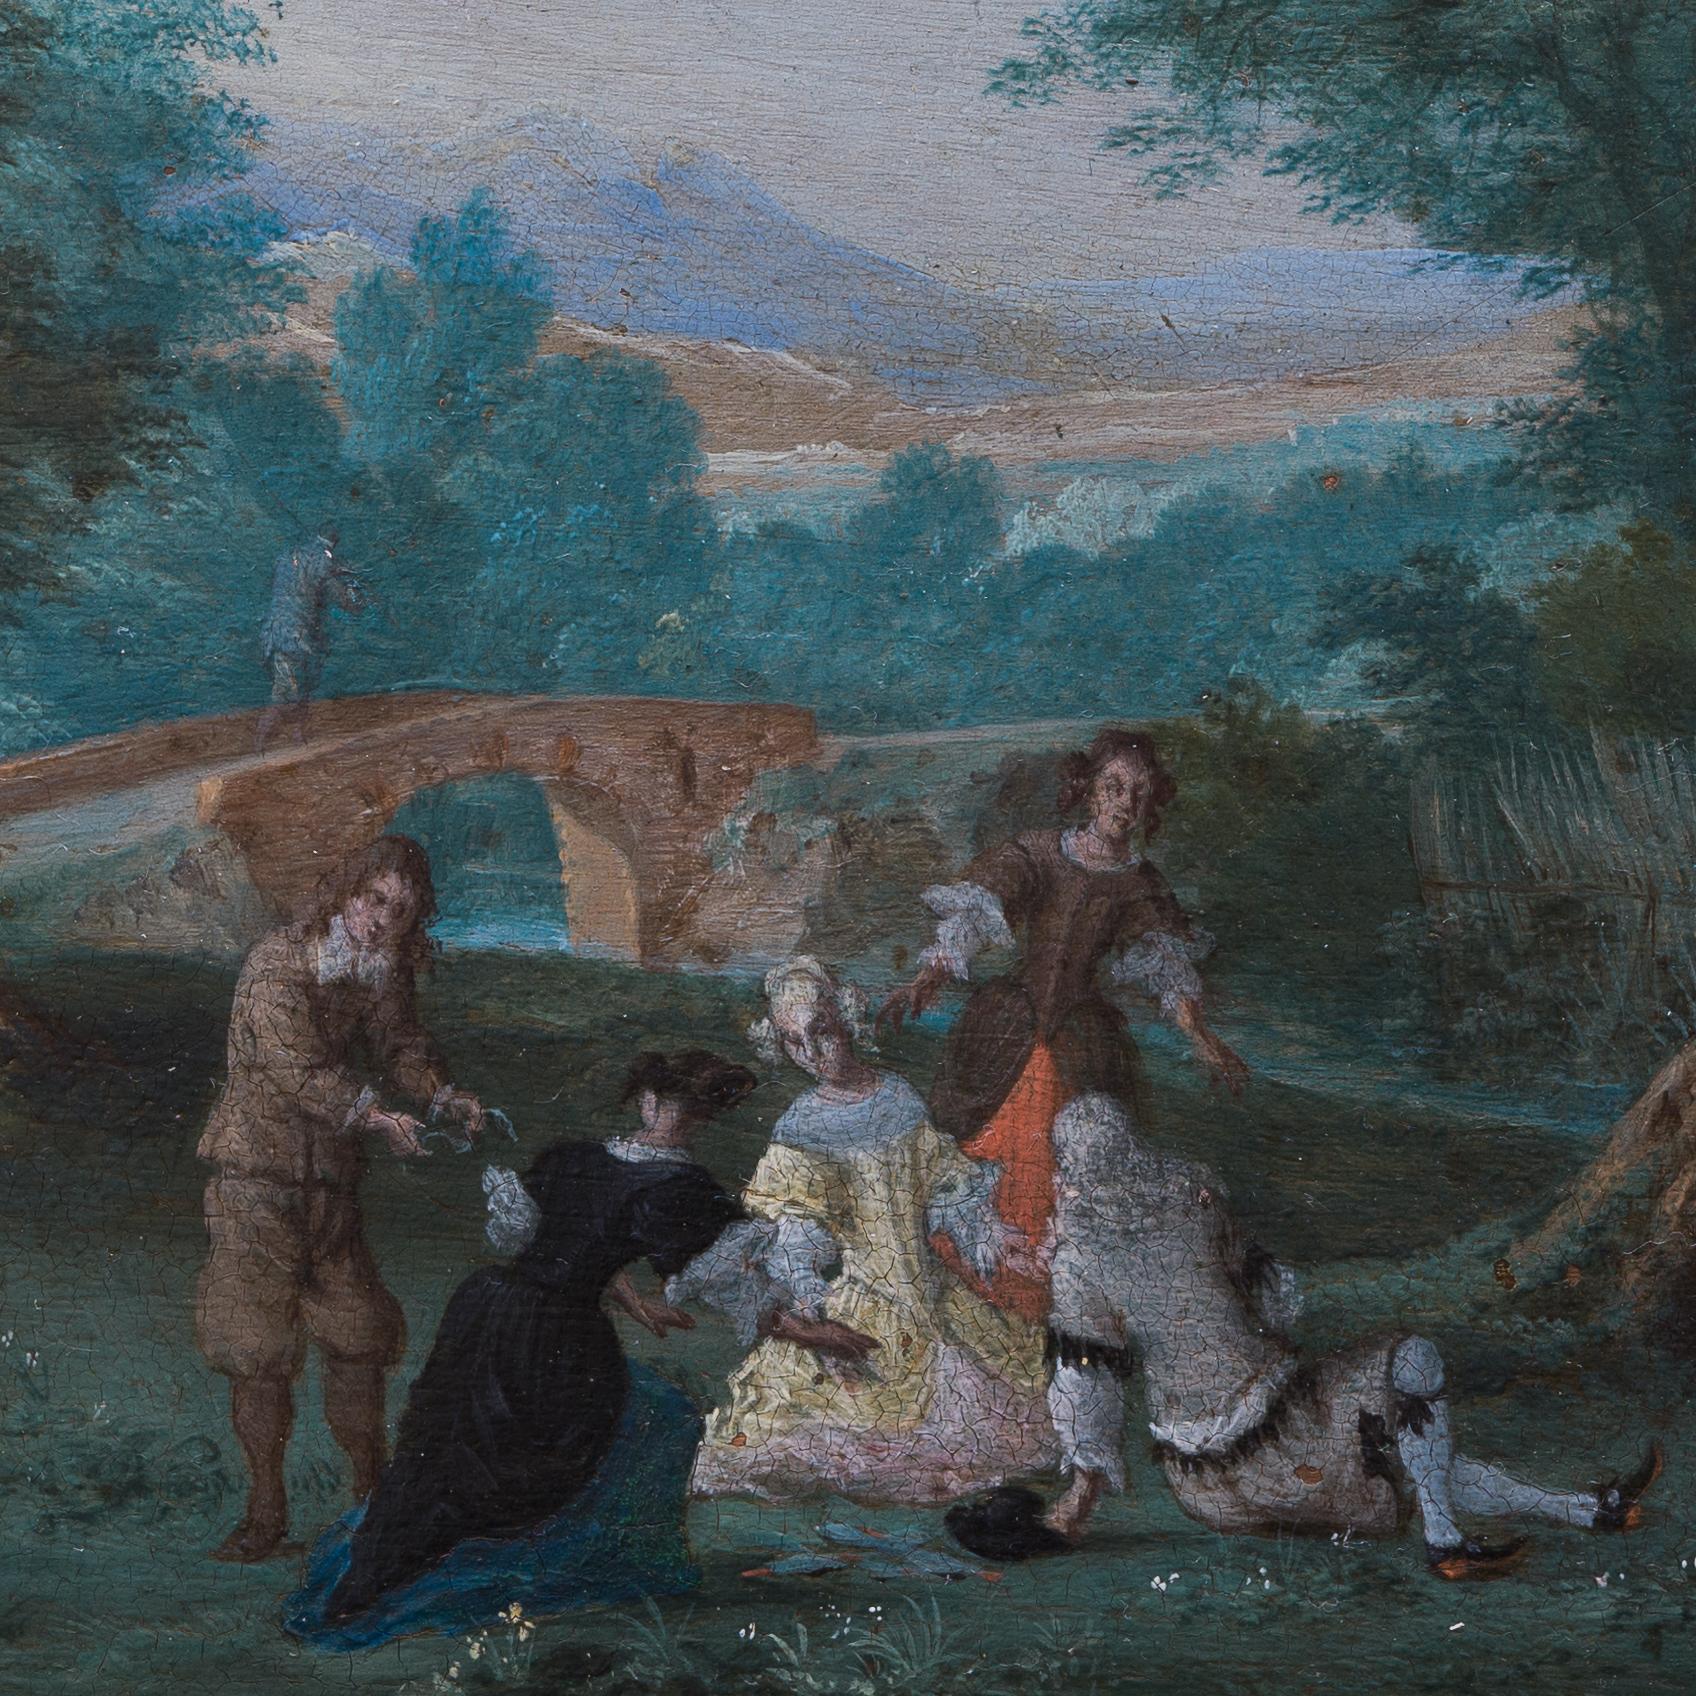 Pieter Gysels, auch bekannt als Peeter Gijsels, war ein bekannter flämischer Maler, der von 1621 bis 1690/91 lebte. Er war bekannt für seine Landschaften, die oft idyllische Szenen aus der Natur darstellen, und seine Werke sind bei